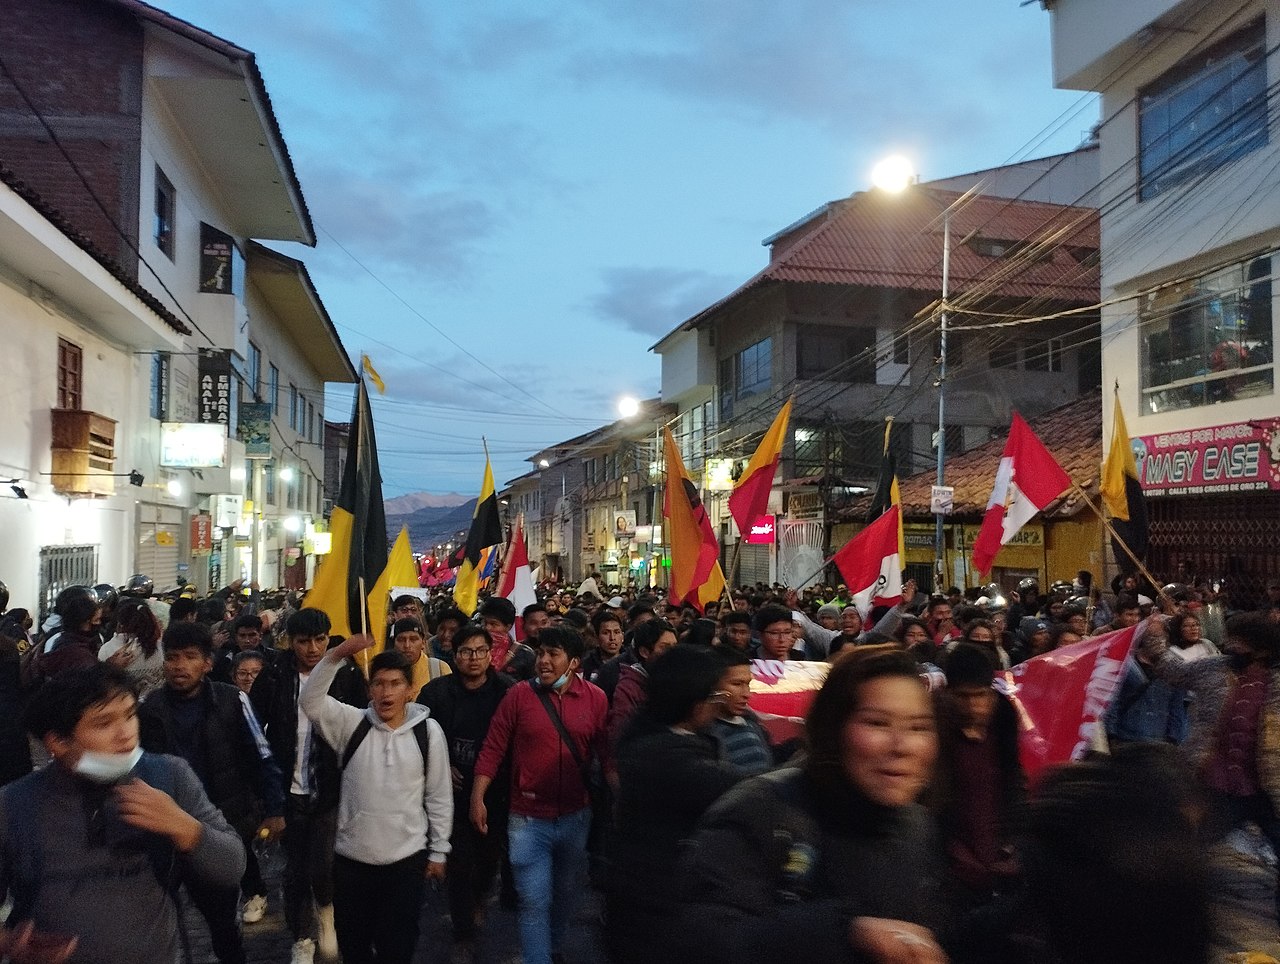 ‘De woede van de Peruanen zit diep en loopt uit op gewelddadige manifestaties’